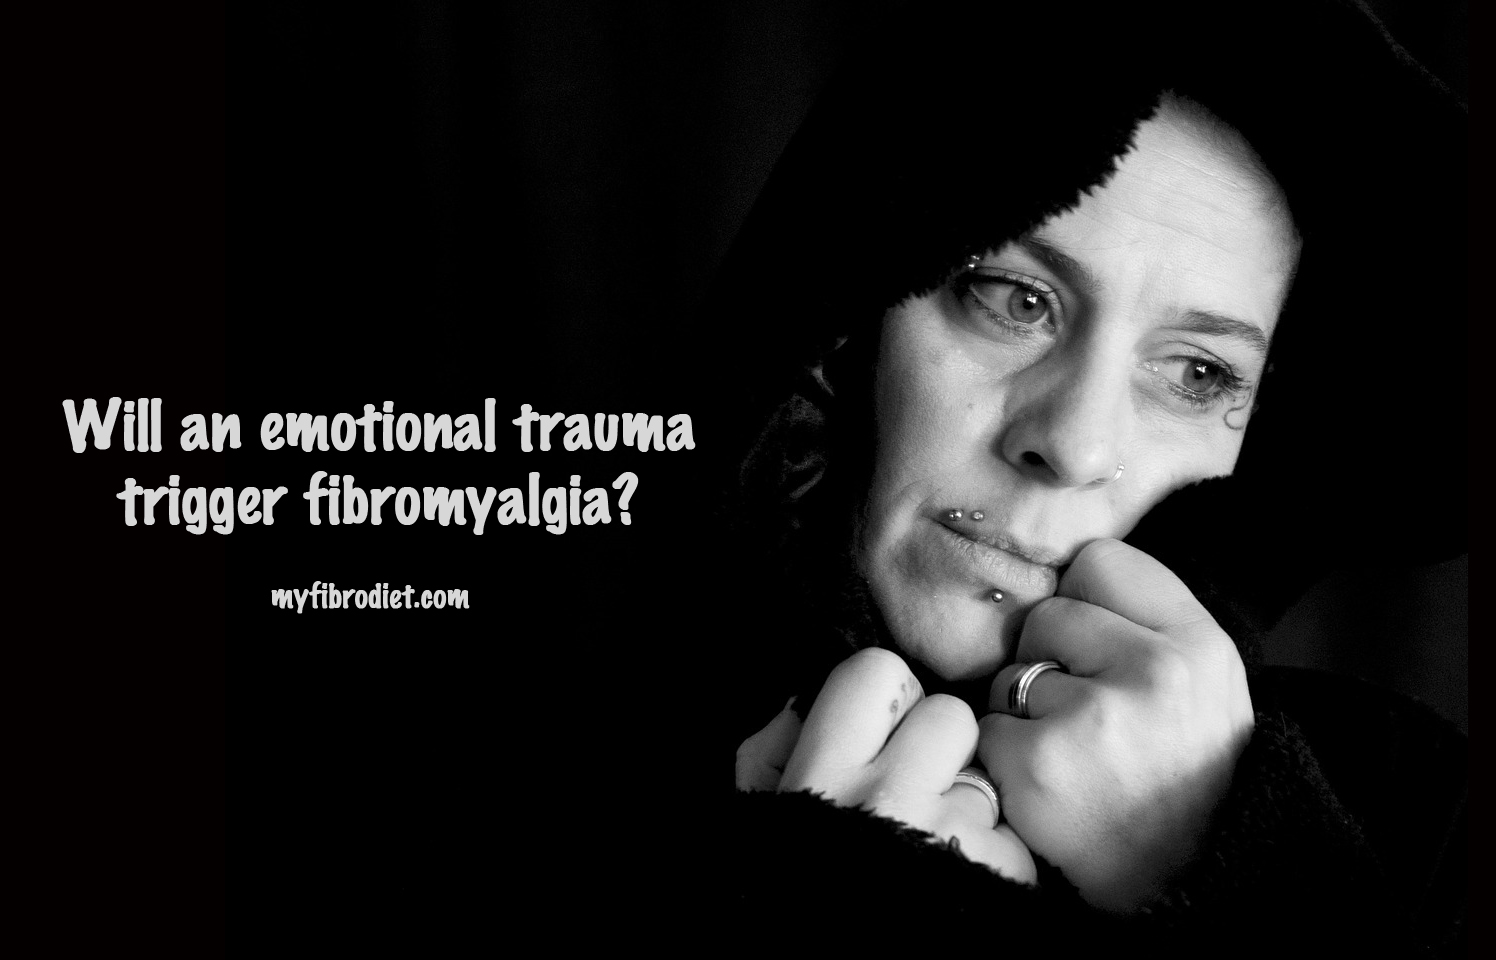 Will an emotional trauma trigger fibromyalgia? - My Fibromyalgia Diet